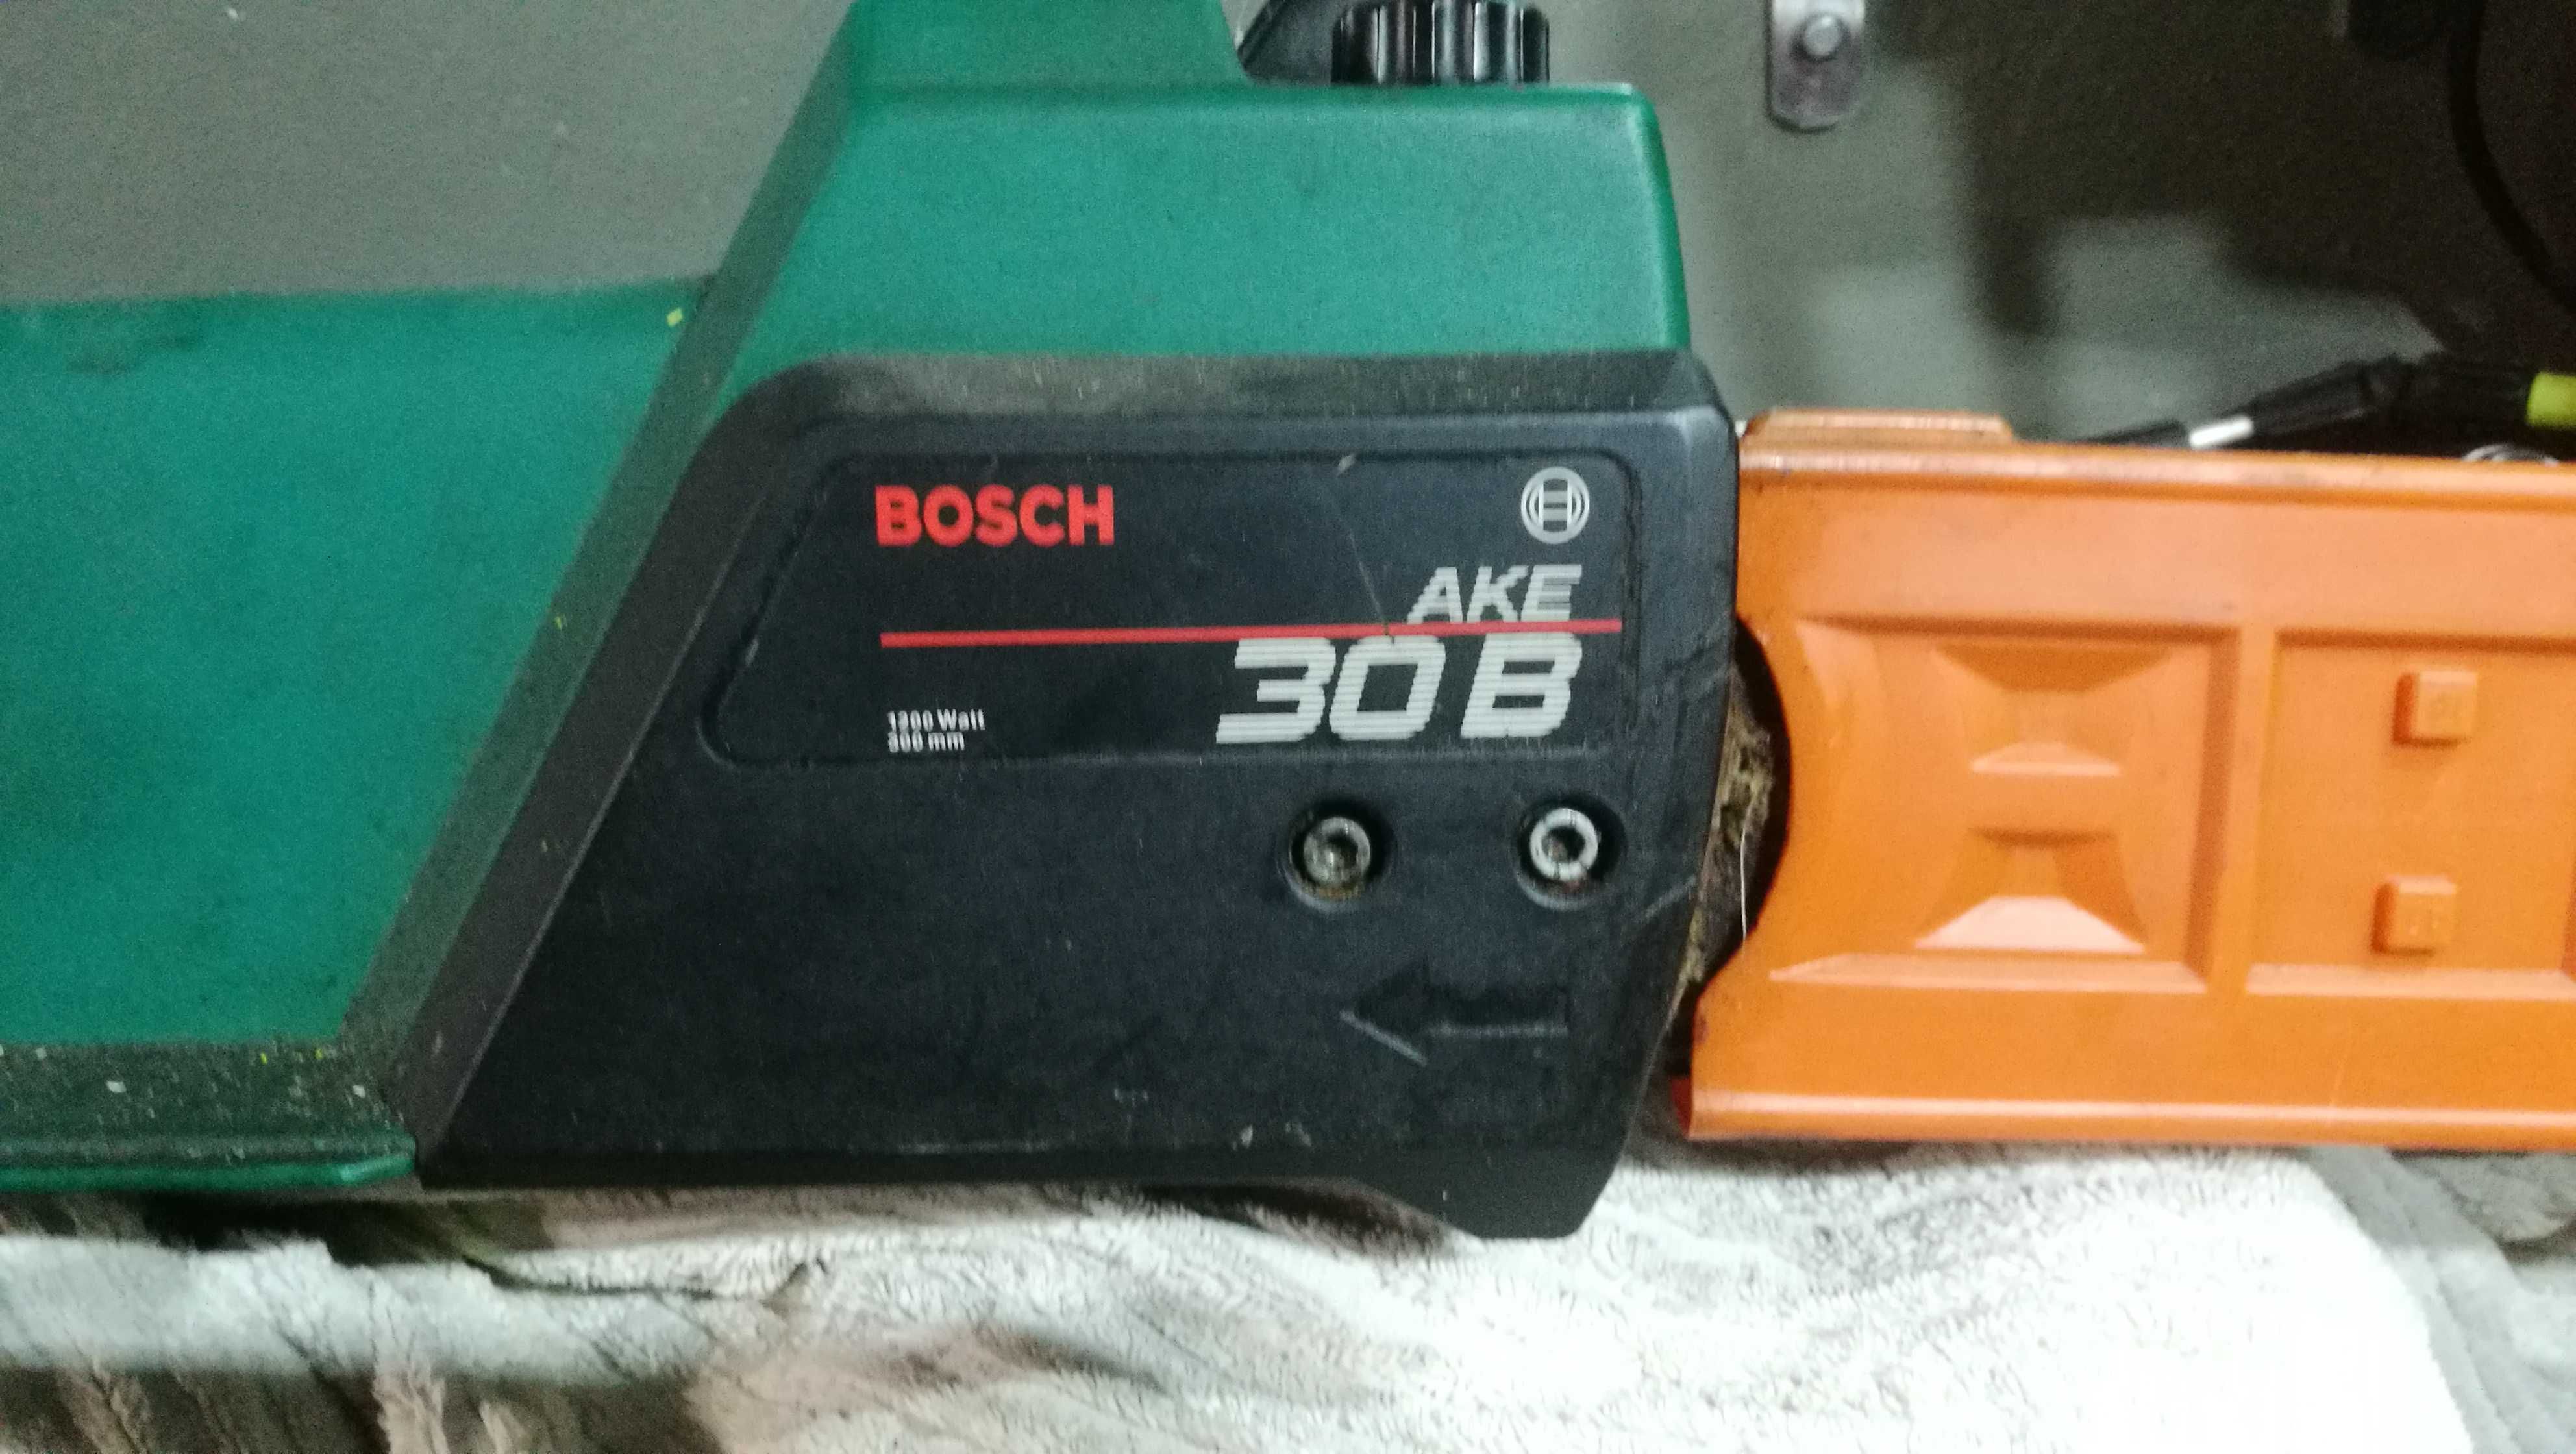 Bosch piła elektryczna AKE 30B